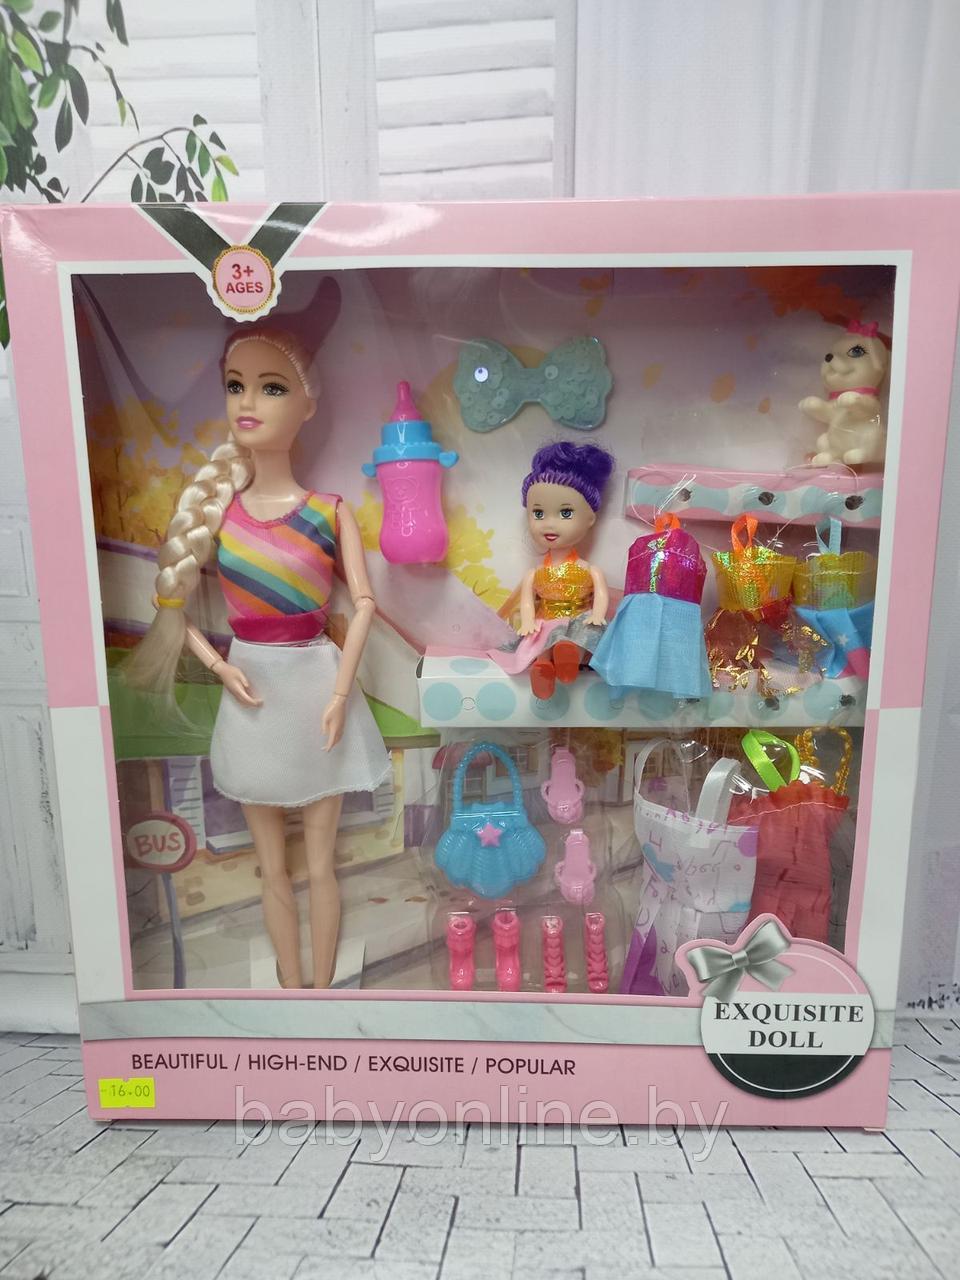 Набор кукла Барби с одеждой, ребенком, собакой и аксессуарами арт 713C